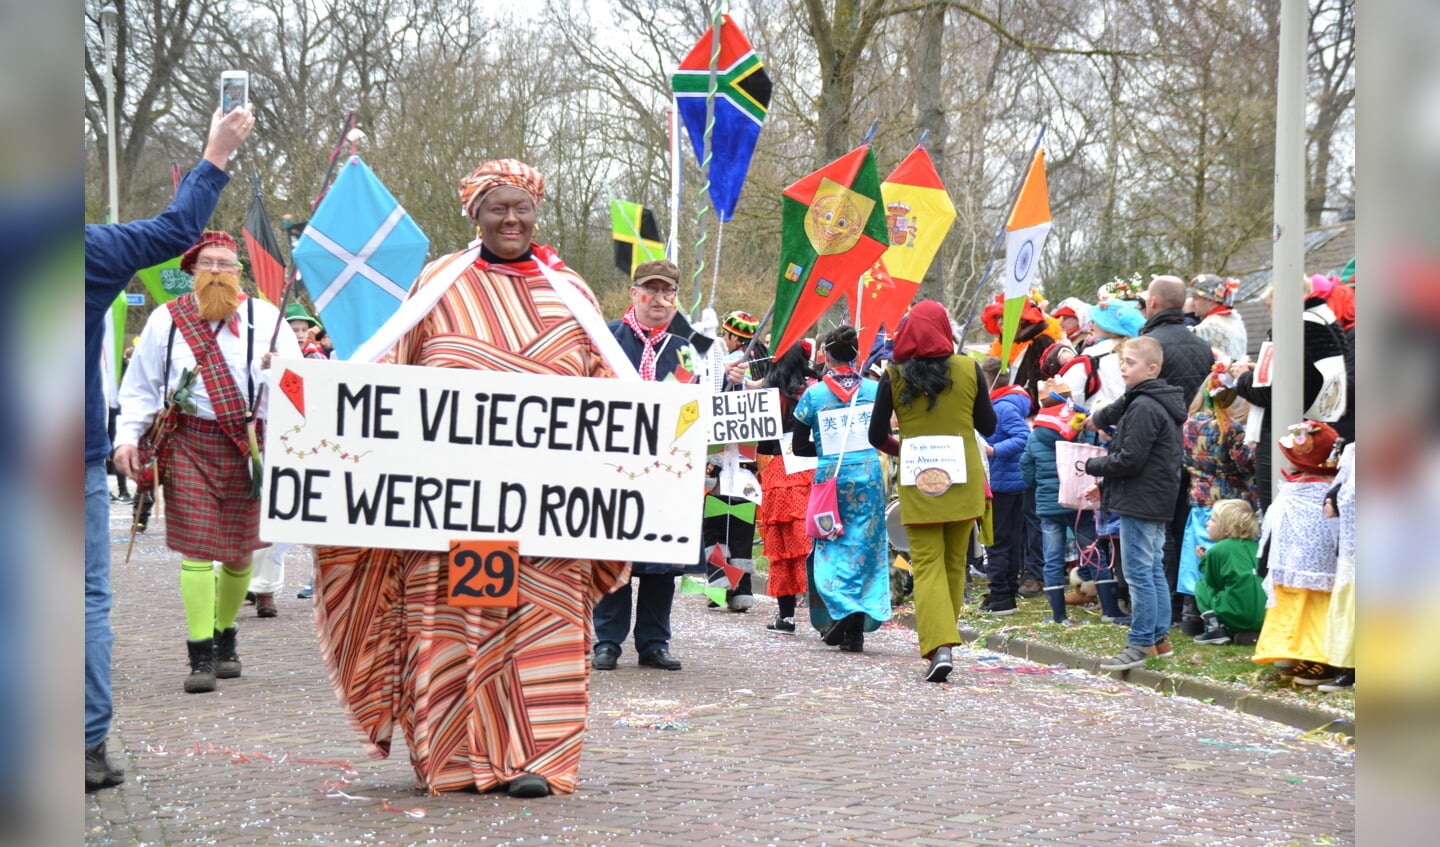 De Alterse carnavalsoptocht is toch een evenement van formaat dat op een kalender van de gemeente Bergen op Zoom thuishoort. Het overzicht met daarop ook evenementen in Halsteren en Lepelstraat is intussen verspreid. 